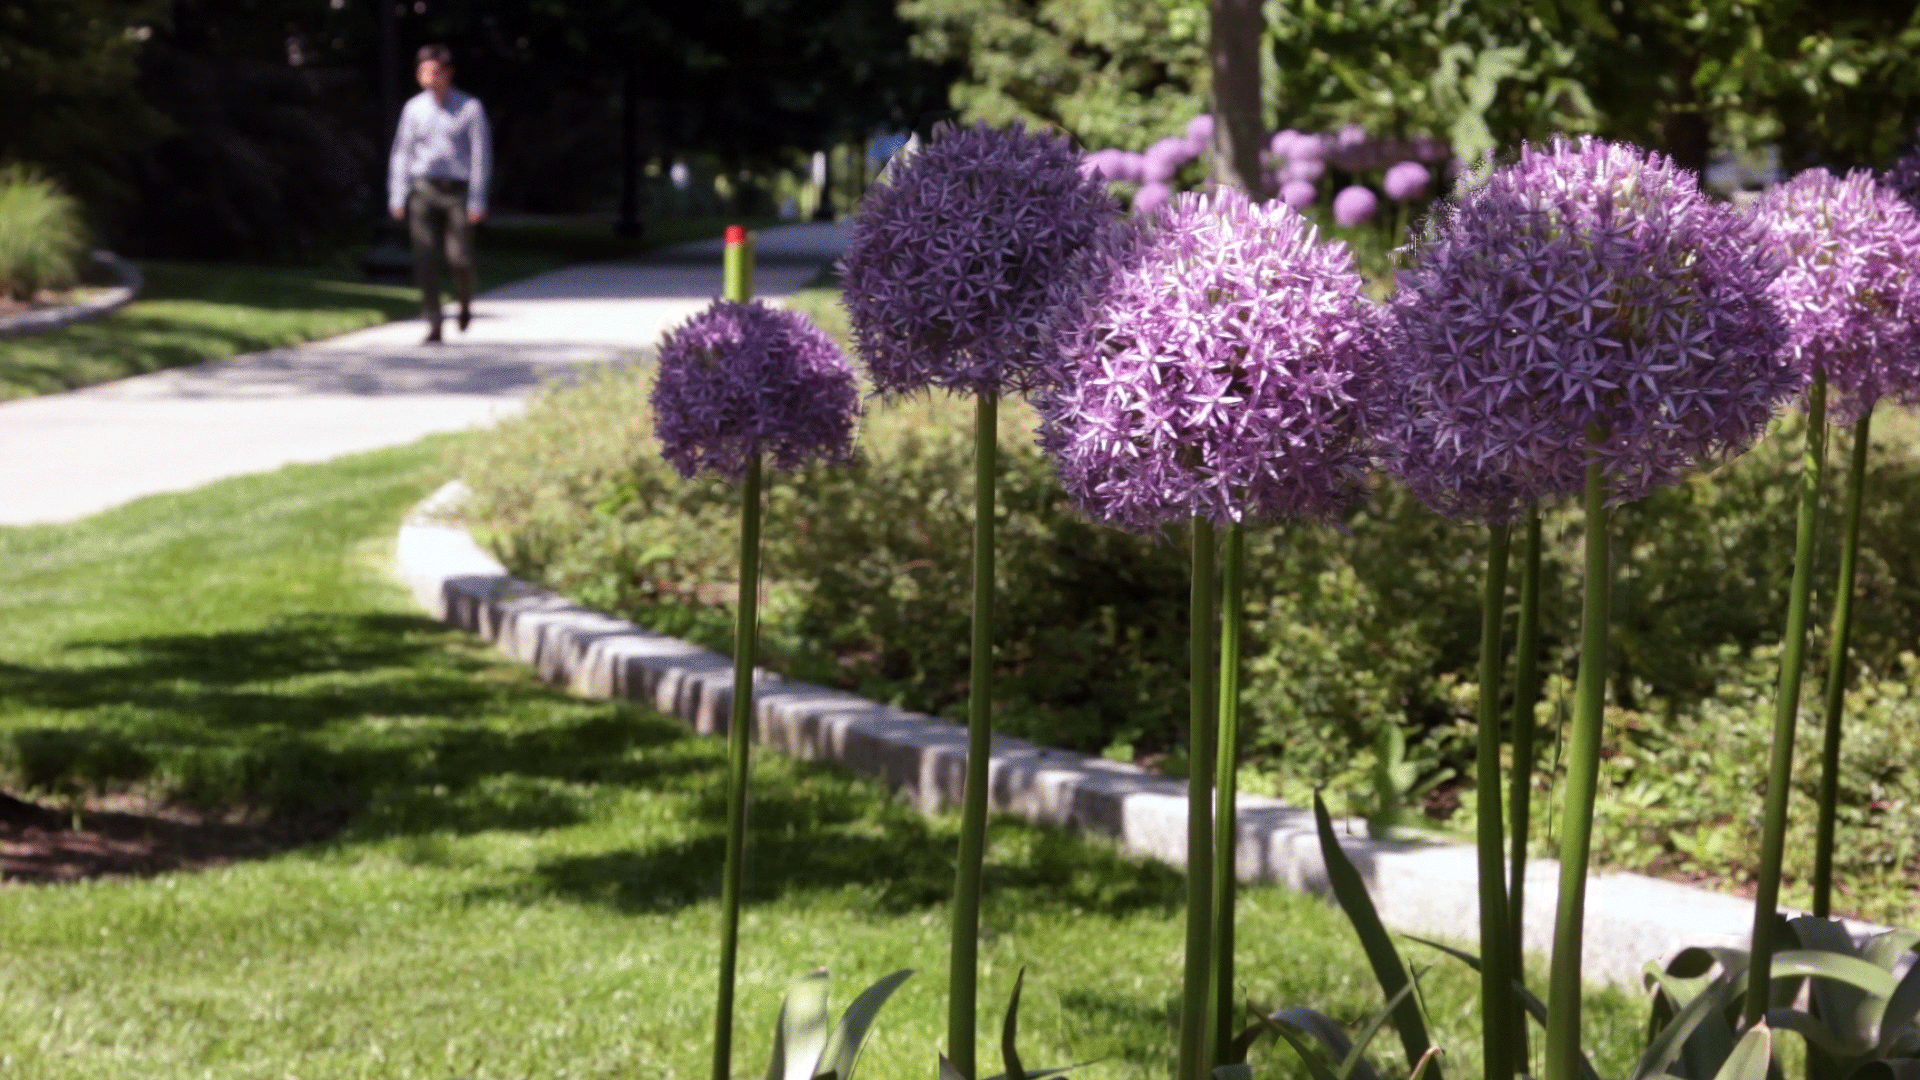 Alliums in the Urban Arboretum